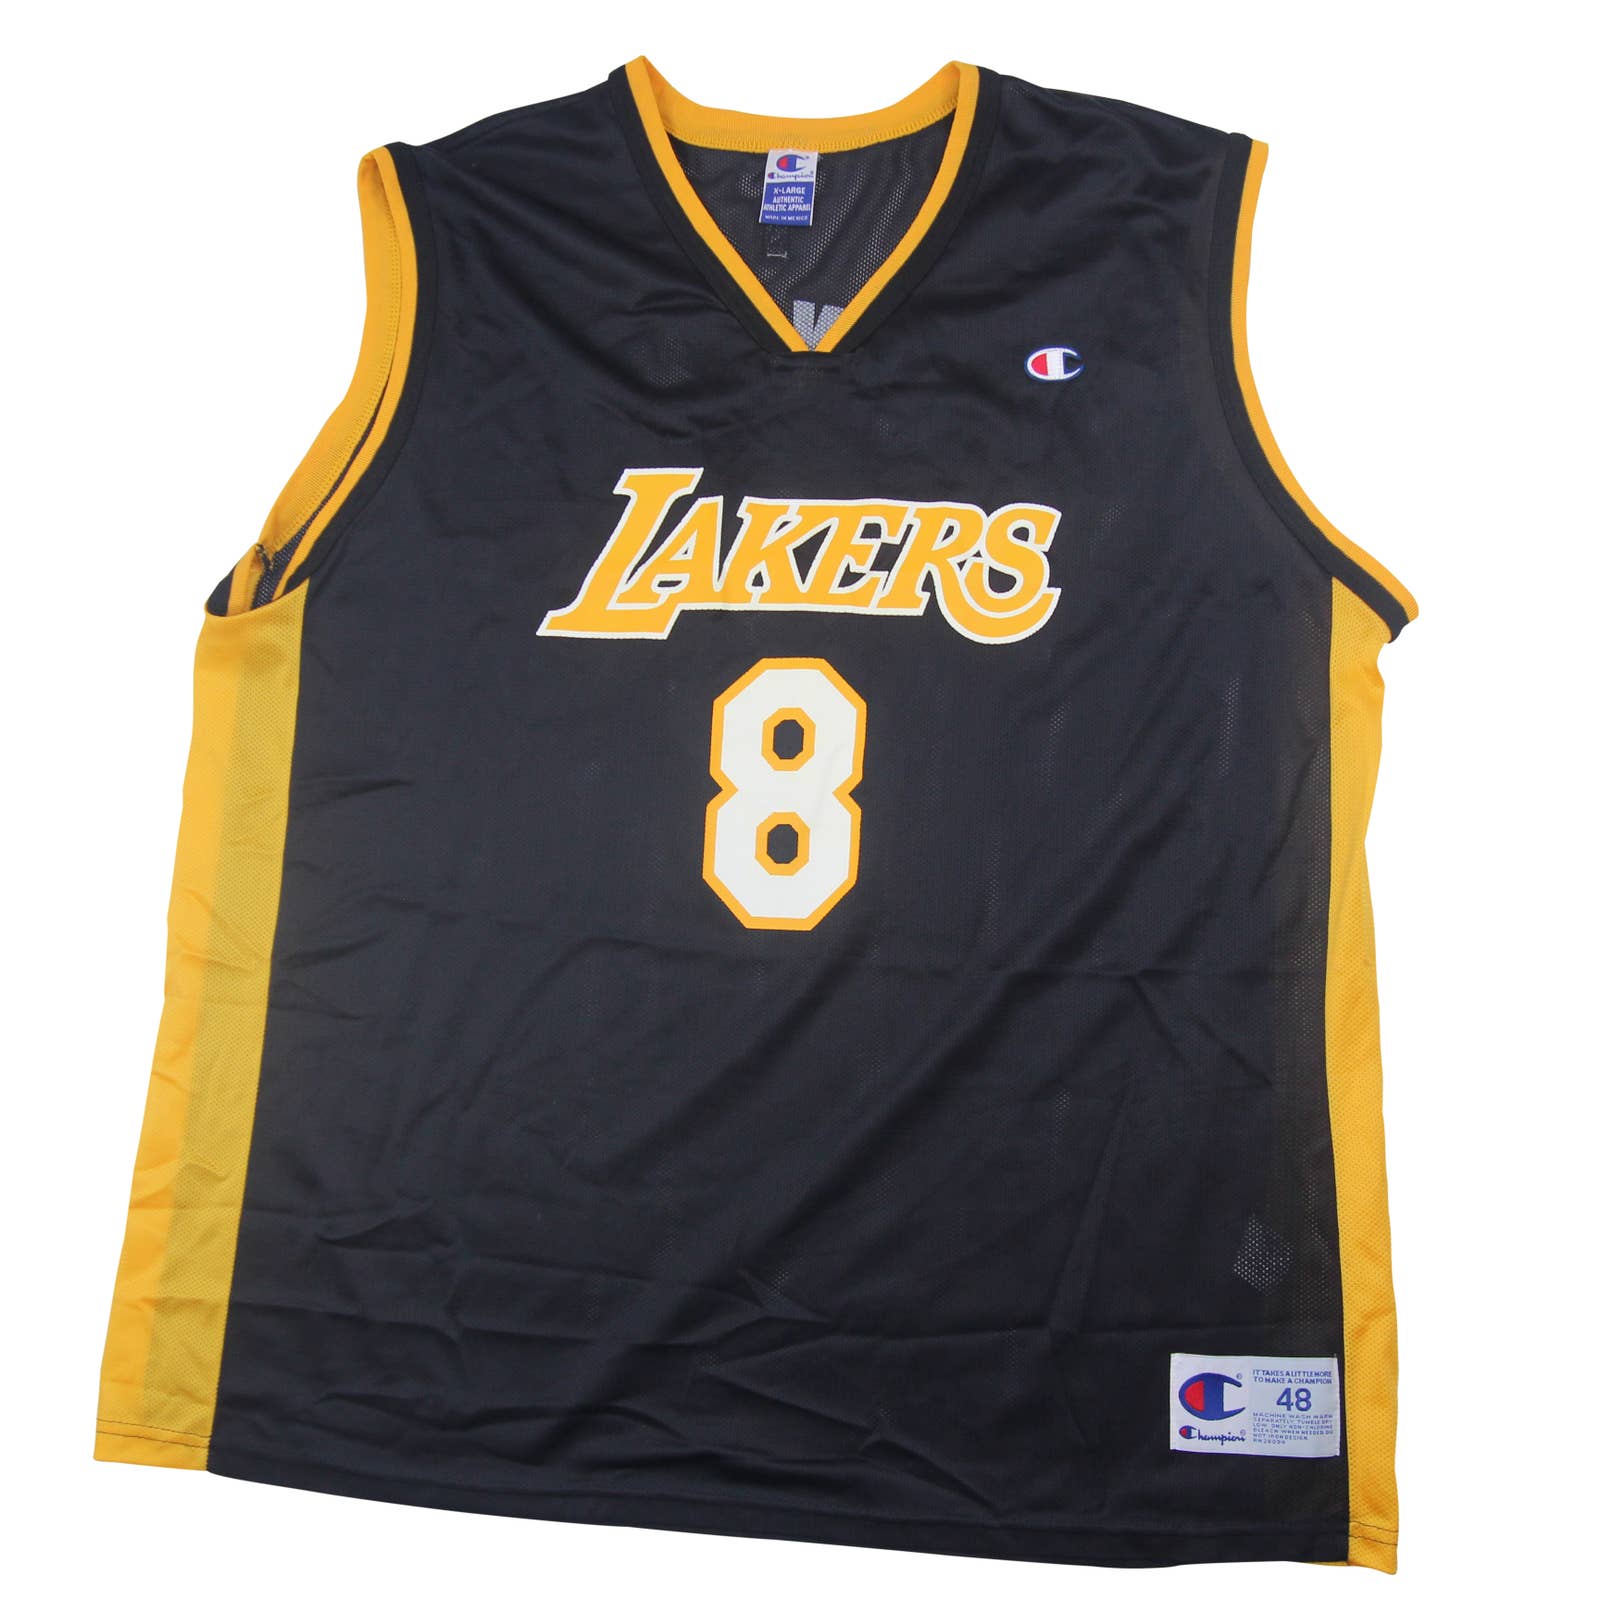 Reebok, Shirts, Kobe Bryant Authentic Lakers Jersey